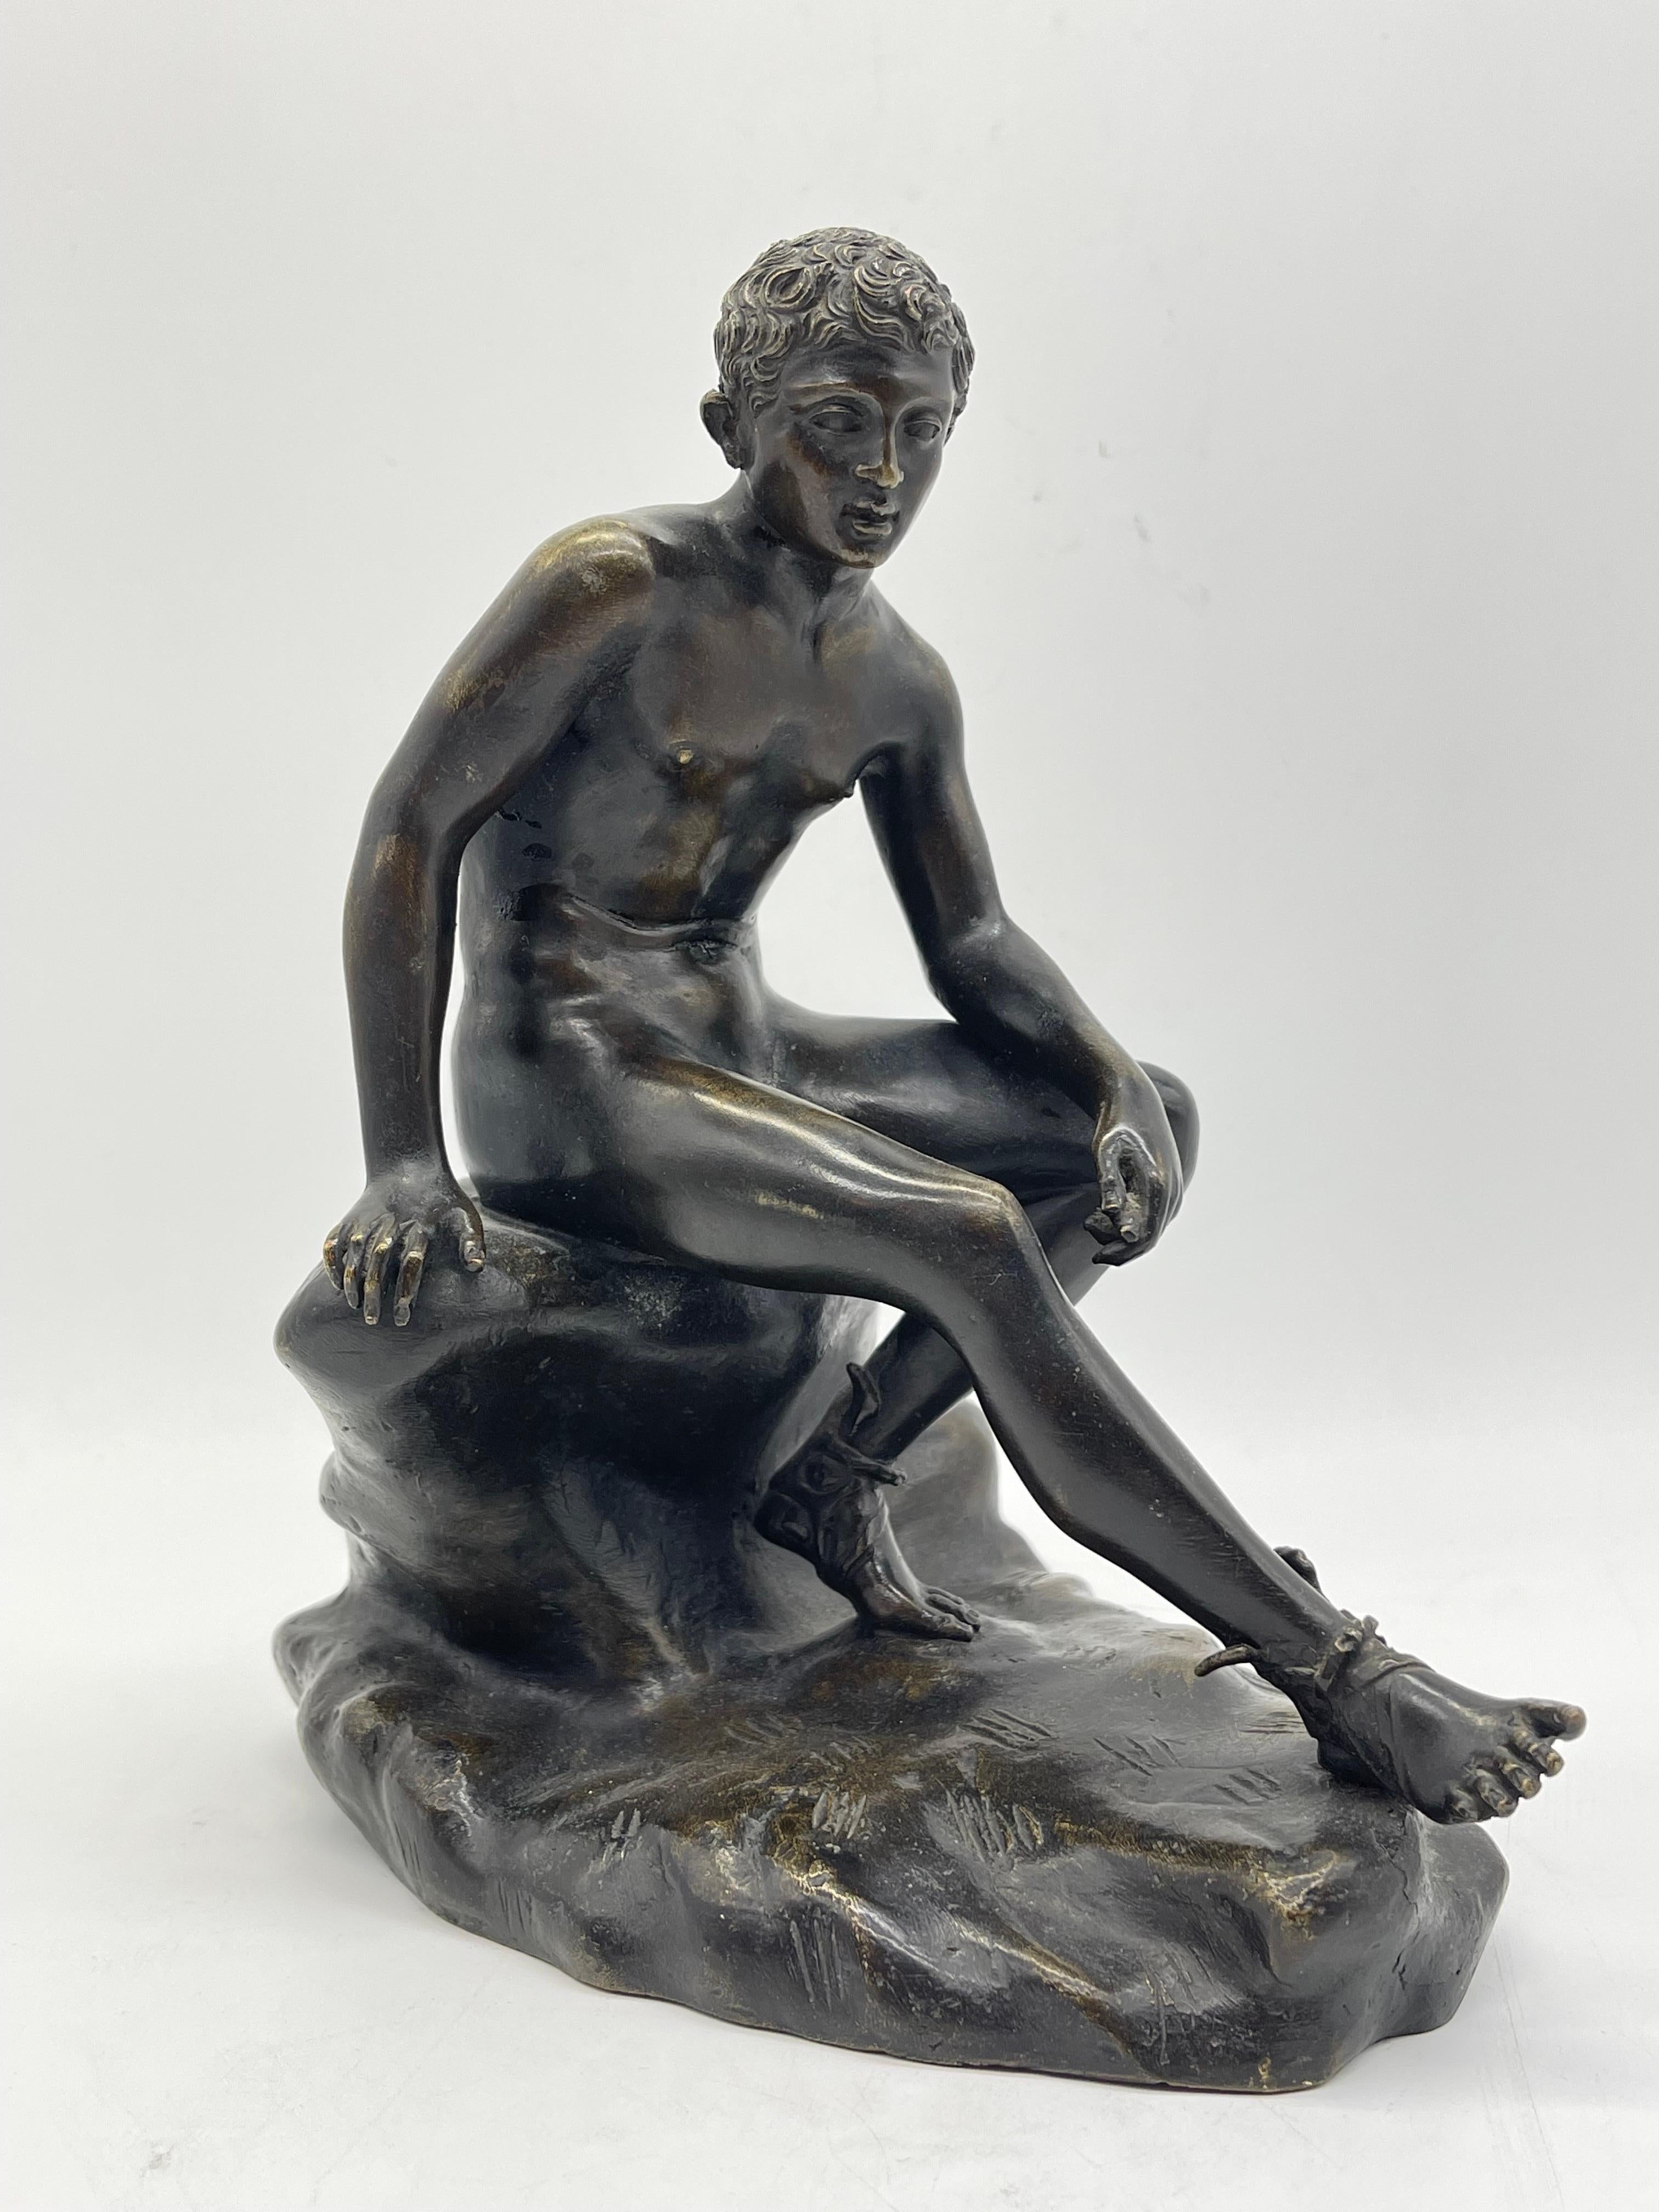 Sitzende athletische Bronzeskulptur / Figur Griechisch - römische Mythologie

Griechisch-römische Mythologie

Der Zustand ist auf den Bildern zu sehen.